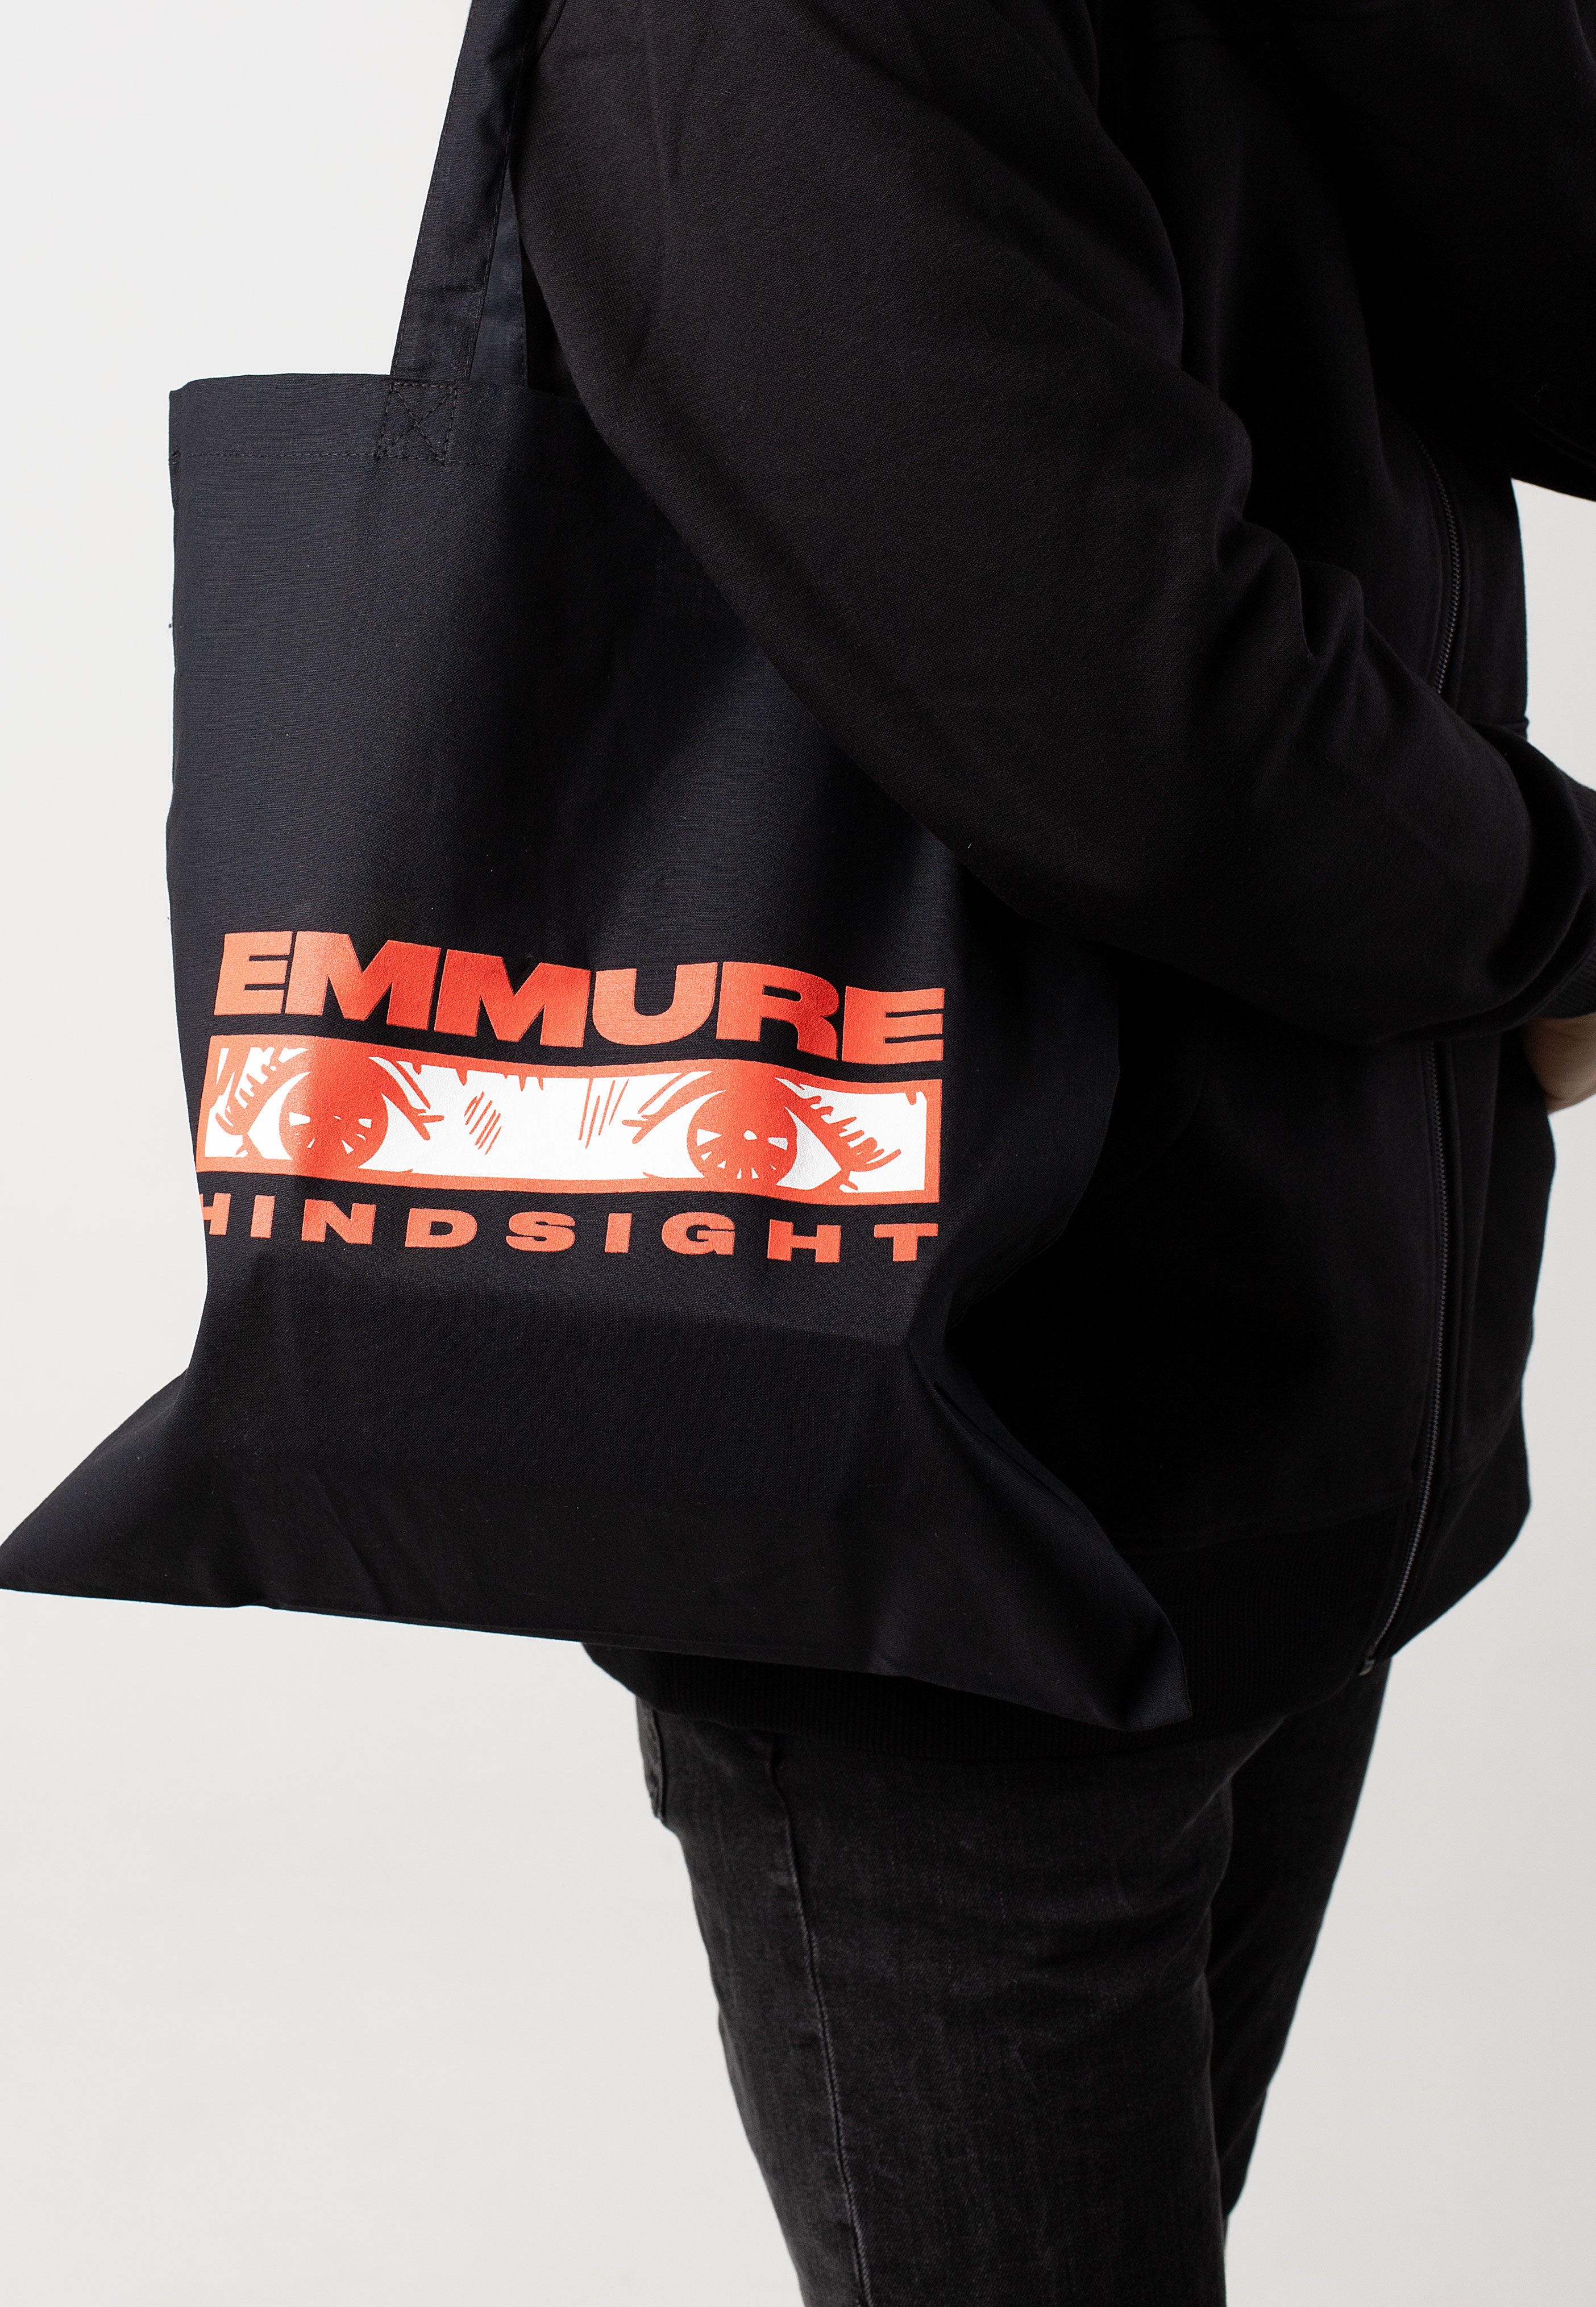 Emmure - Anime - Tote Bag